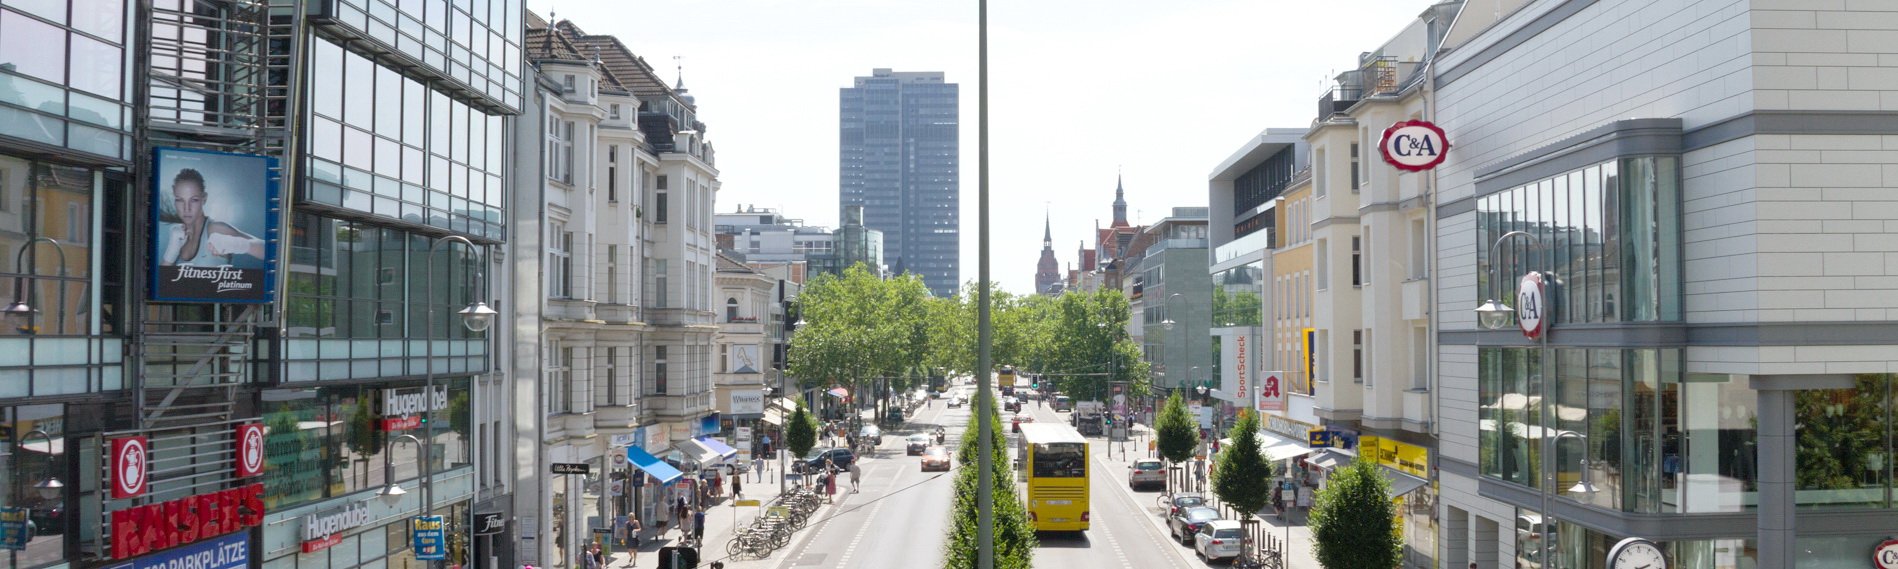 Berlijn in detail – Berlijn-Steglitz in een oogopslag